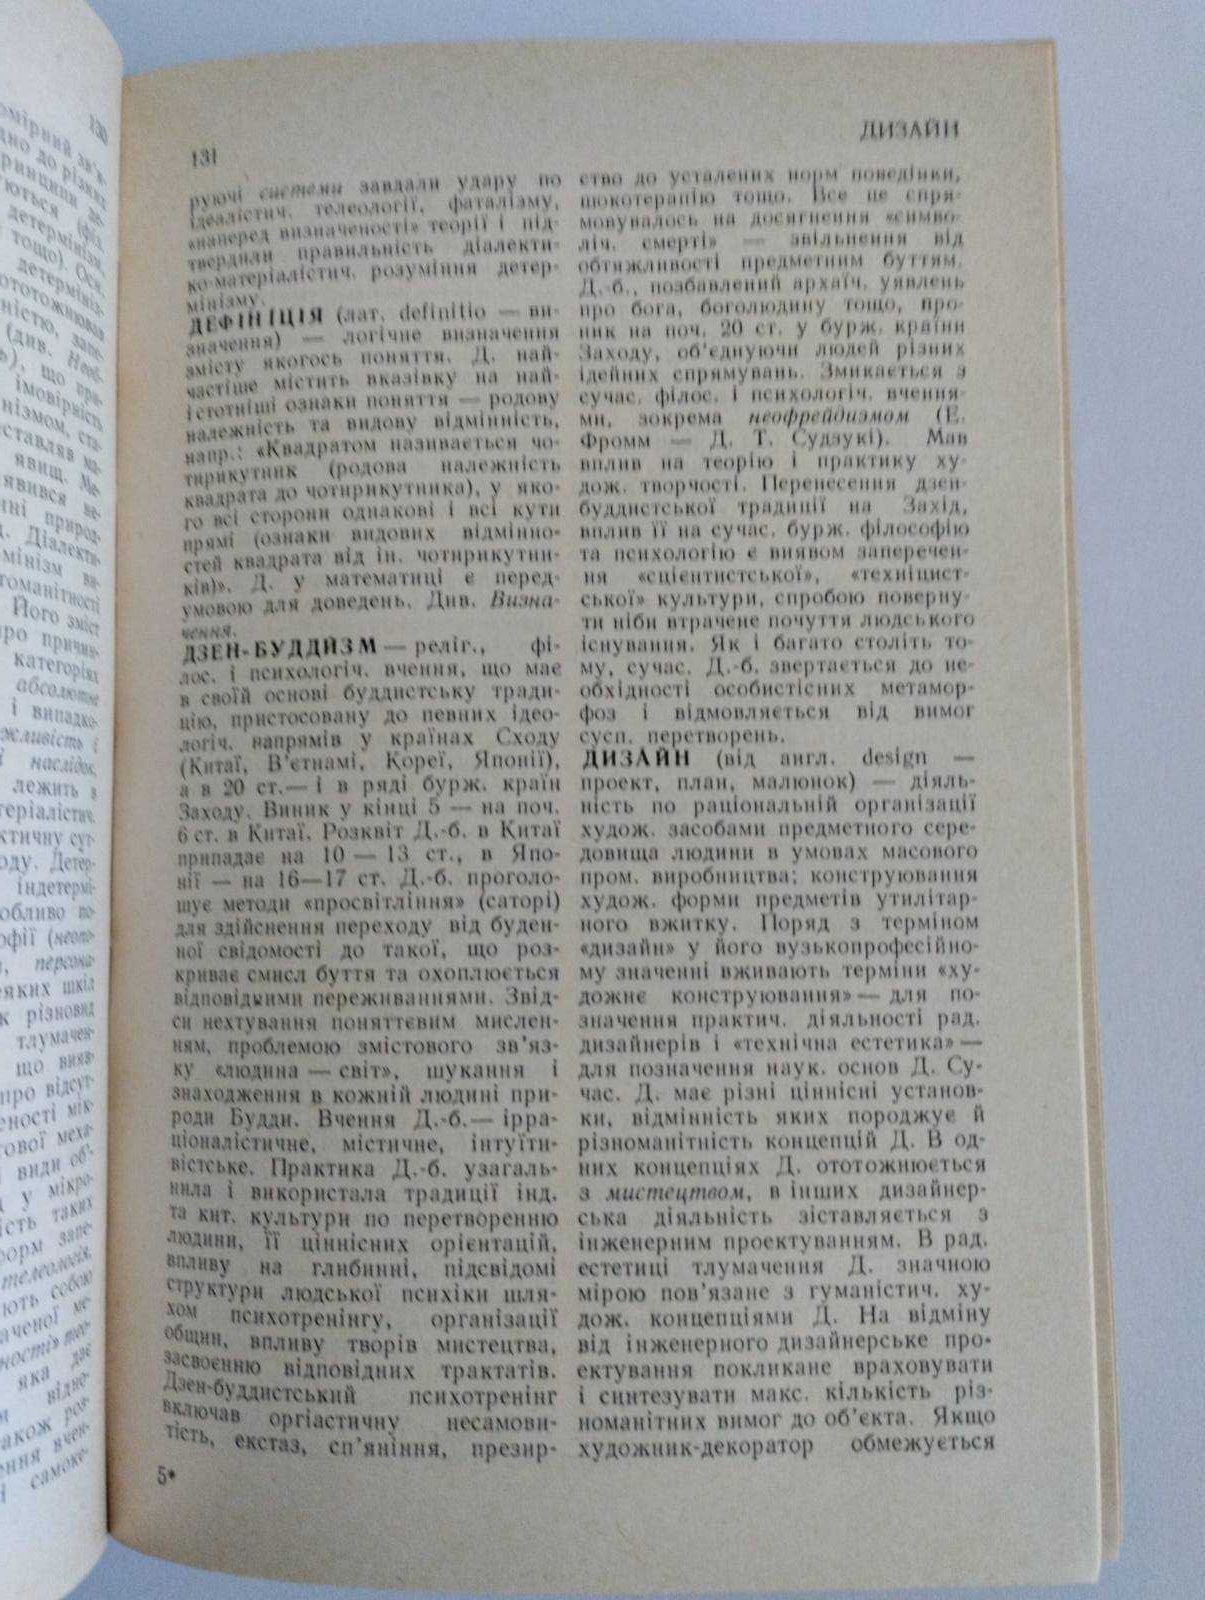 Філософський словник у чудовому стані 1986 року